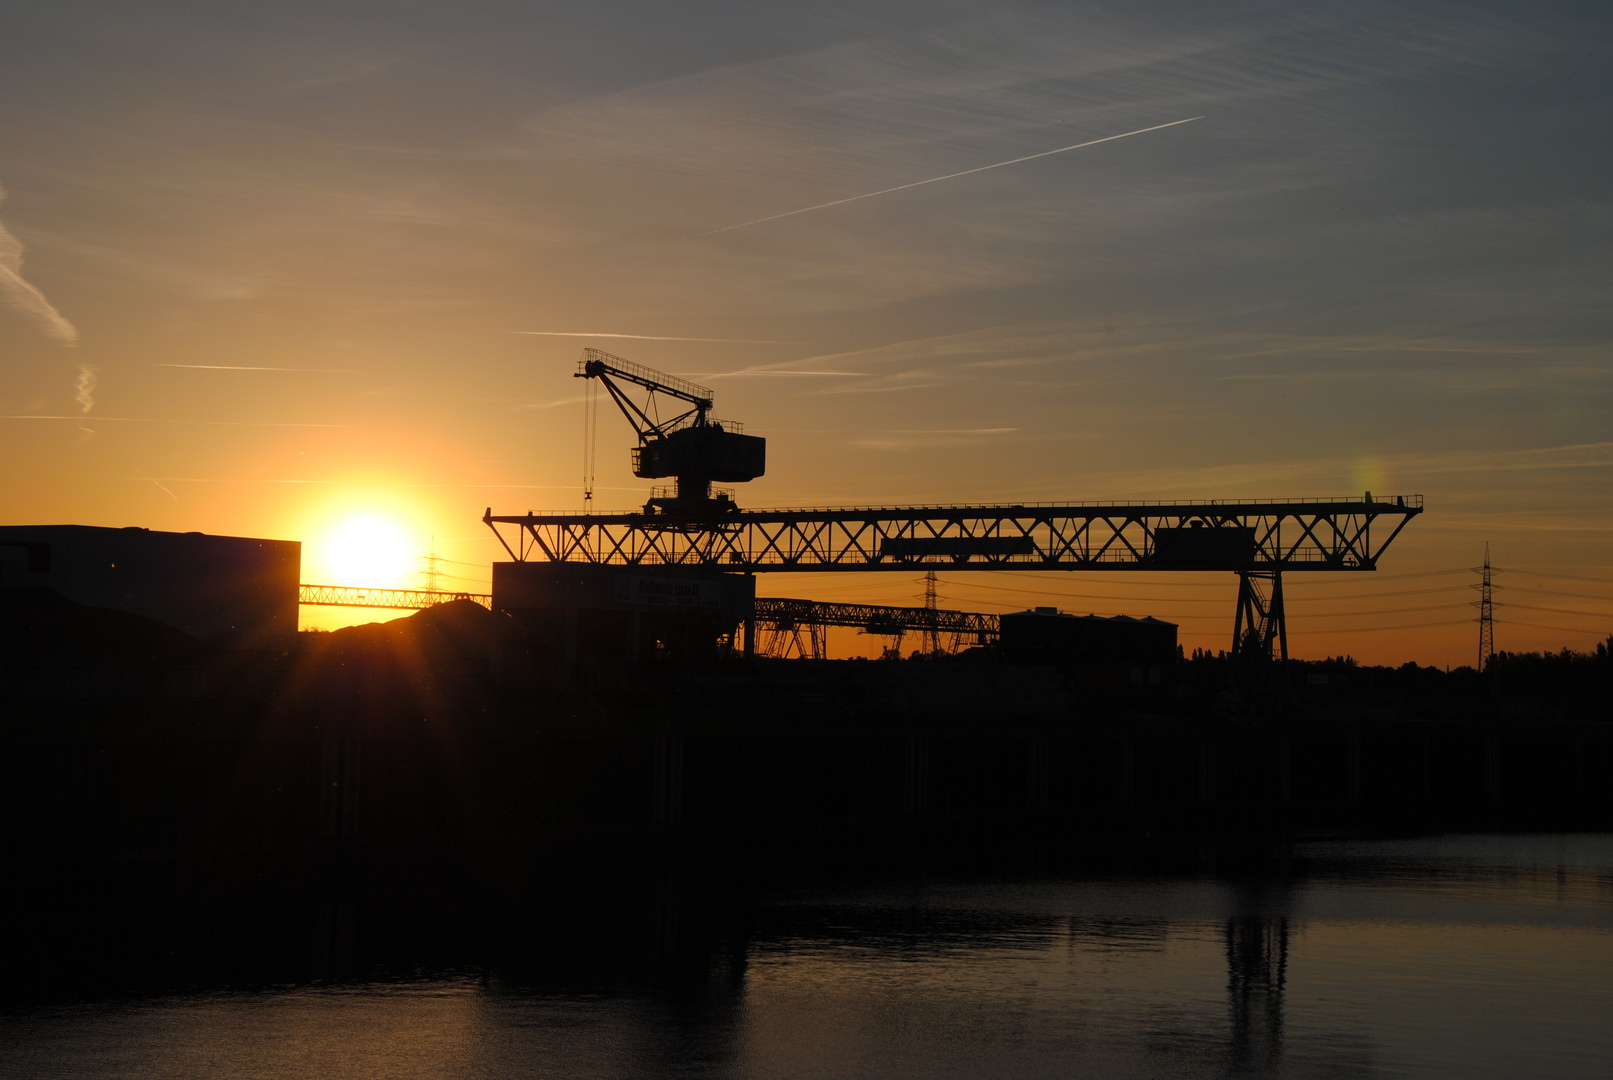 Sonnenuntergang am Stadthafen in Essen